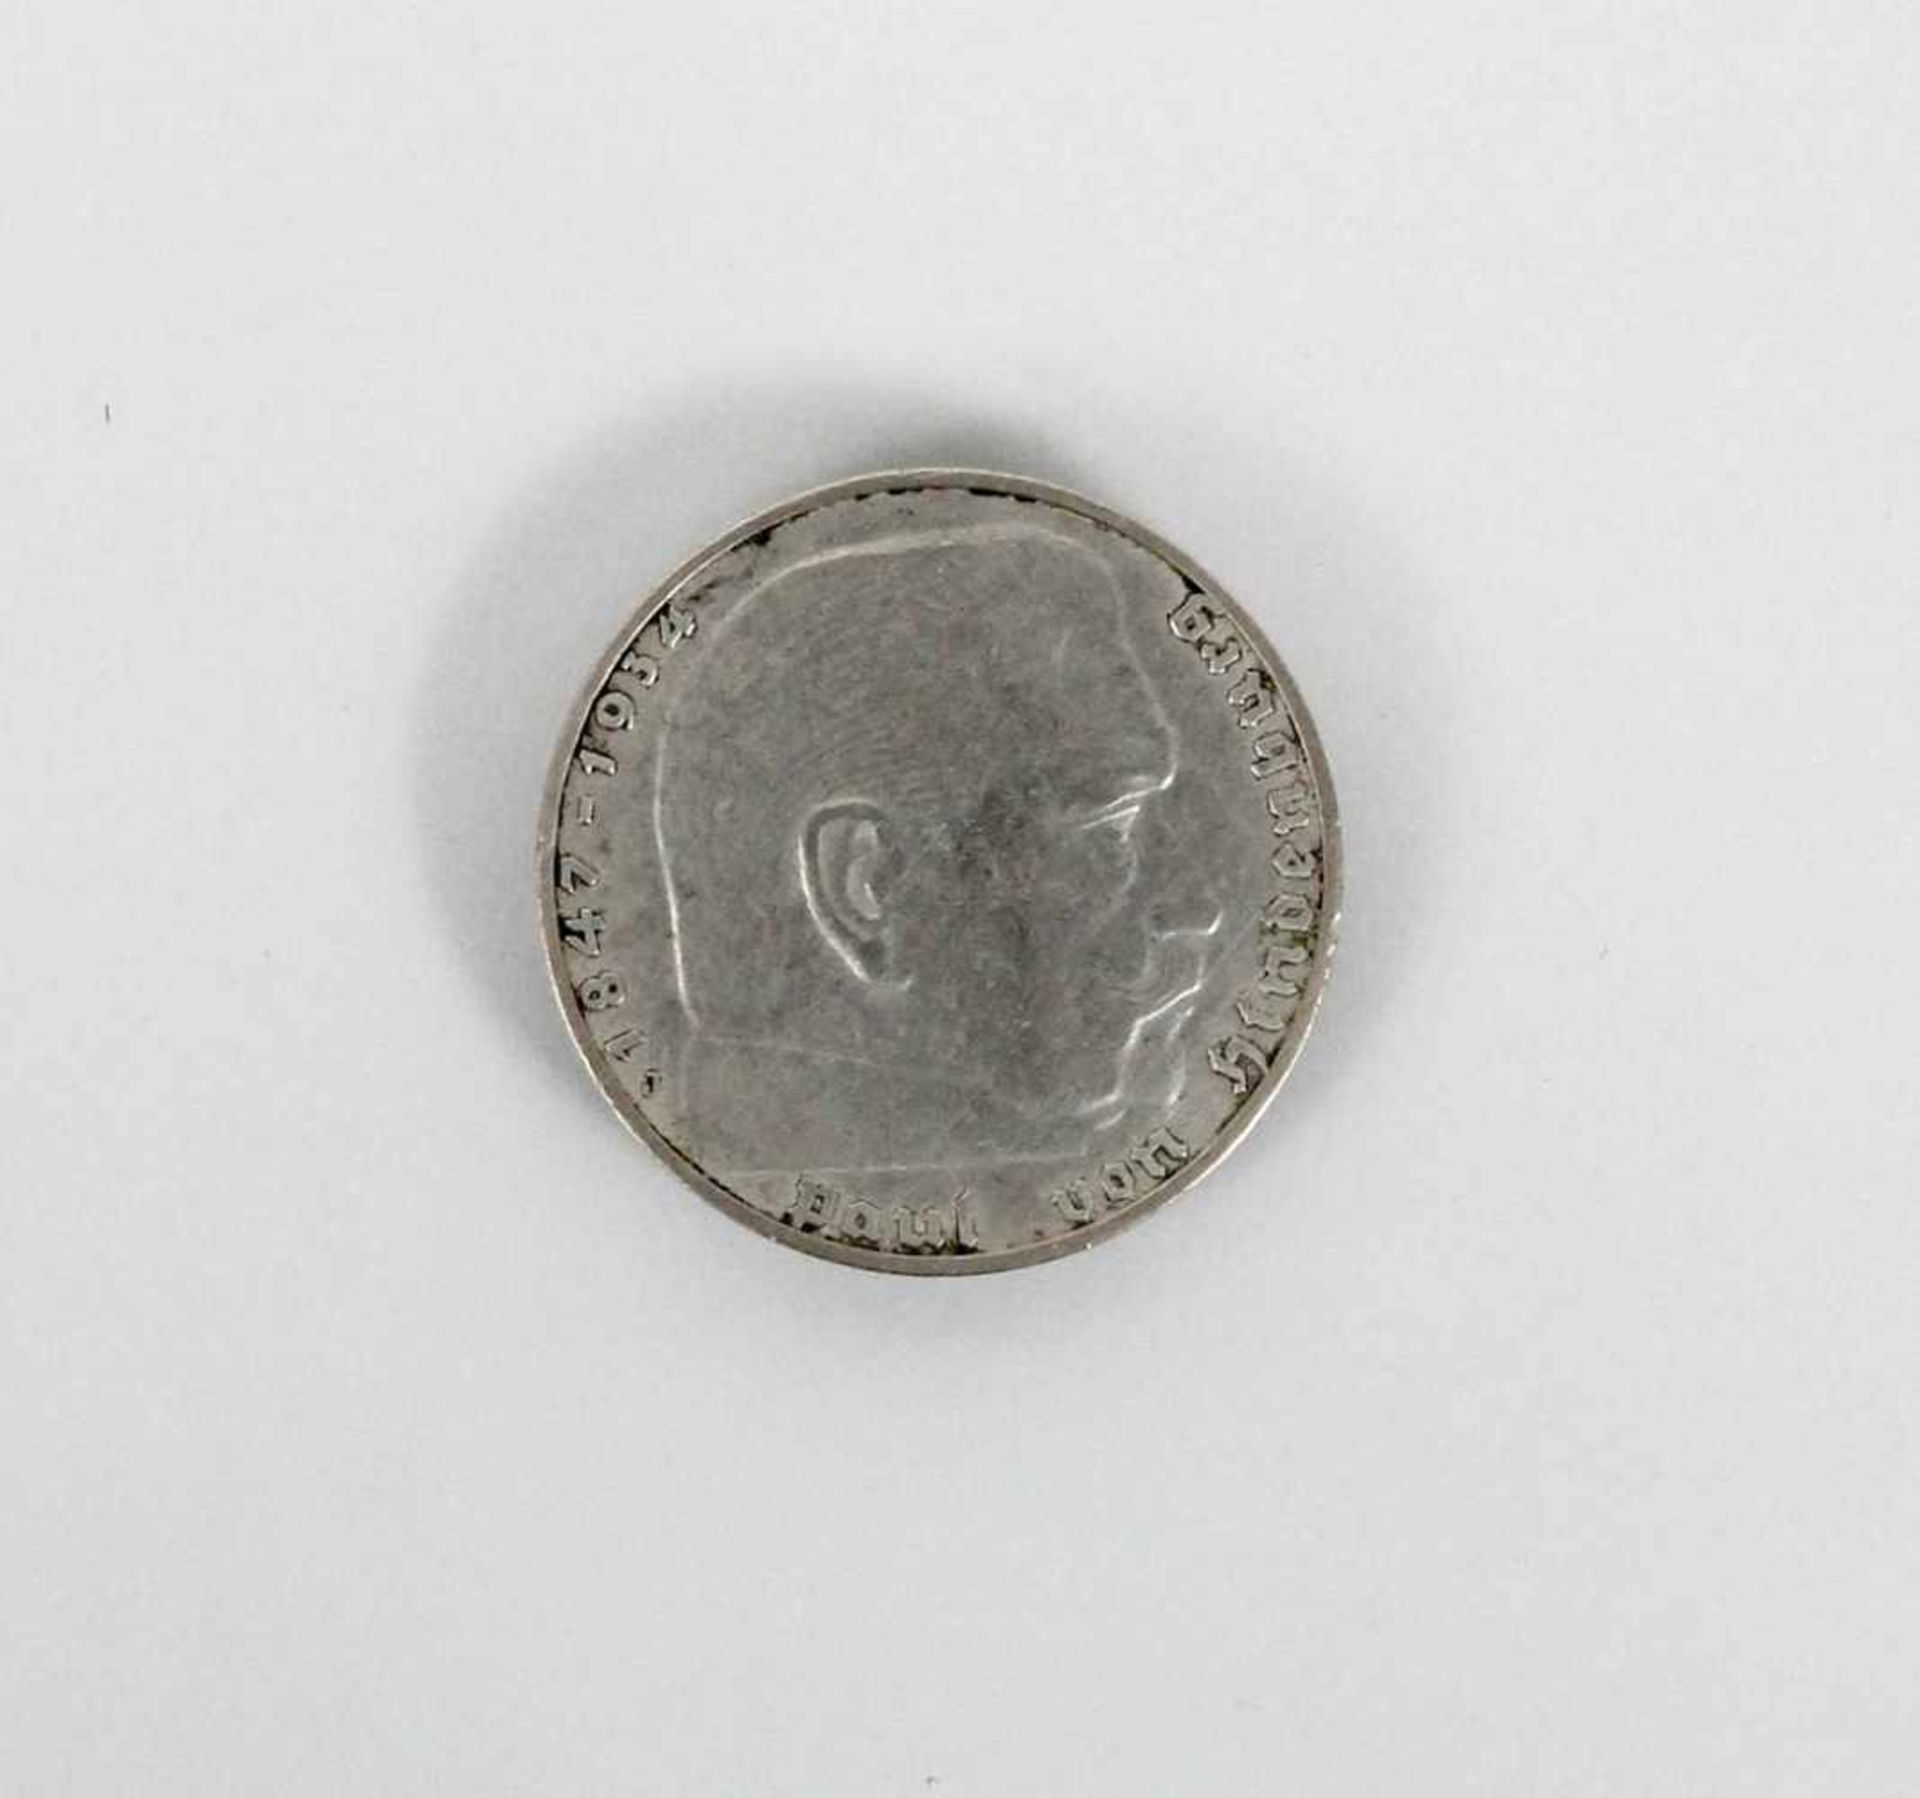 30 mal 2 Reichsmark " Paul von Hindenburg " Silbermünzen< - Bild 3 aus 5